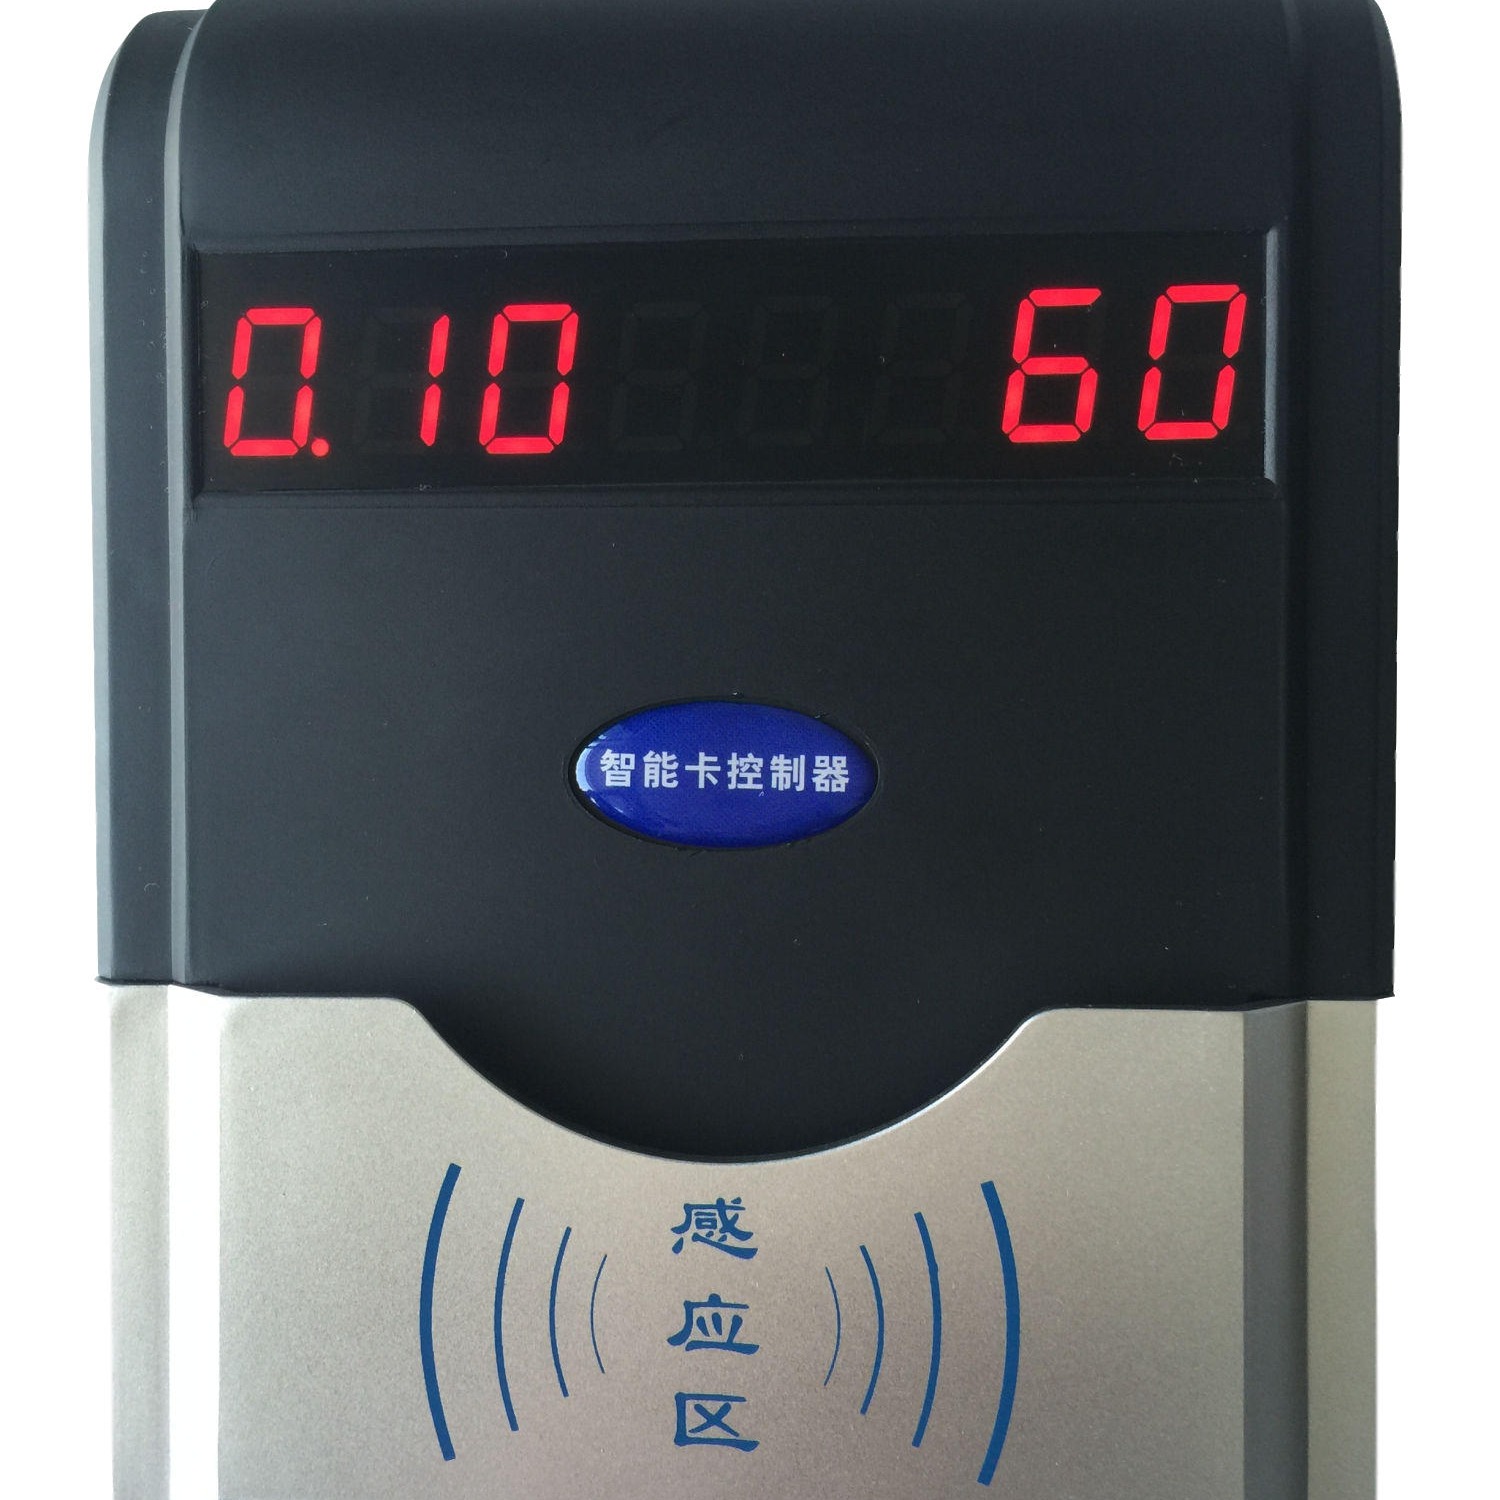 兴天下HF-660淋浴节水器,刷卡水控机,淋浴控水系统